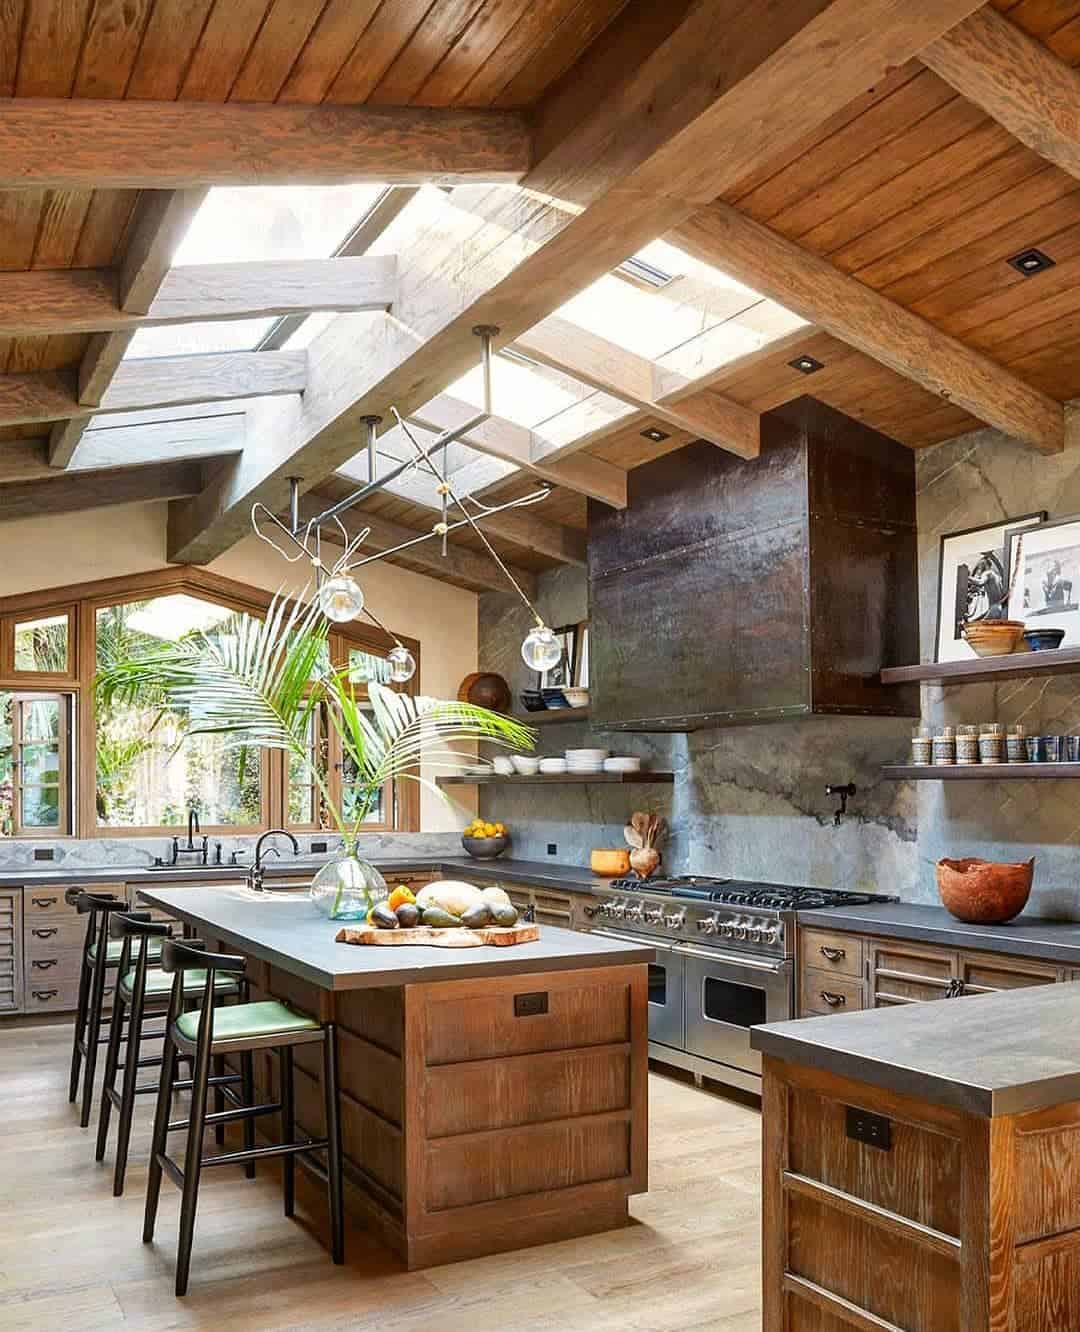  kitchen wooden design